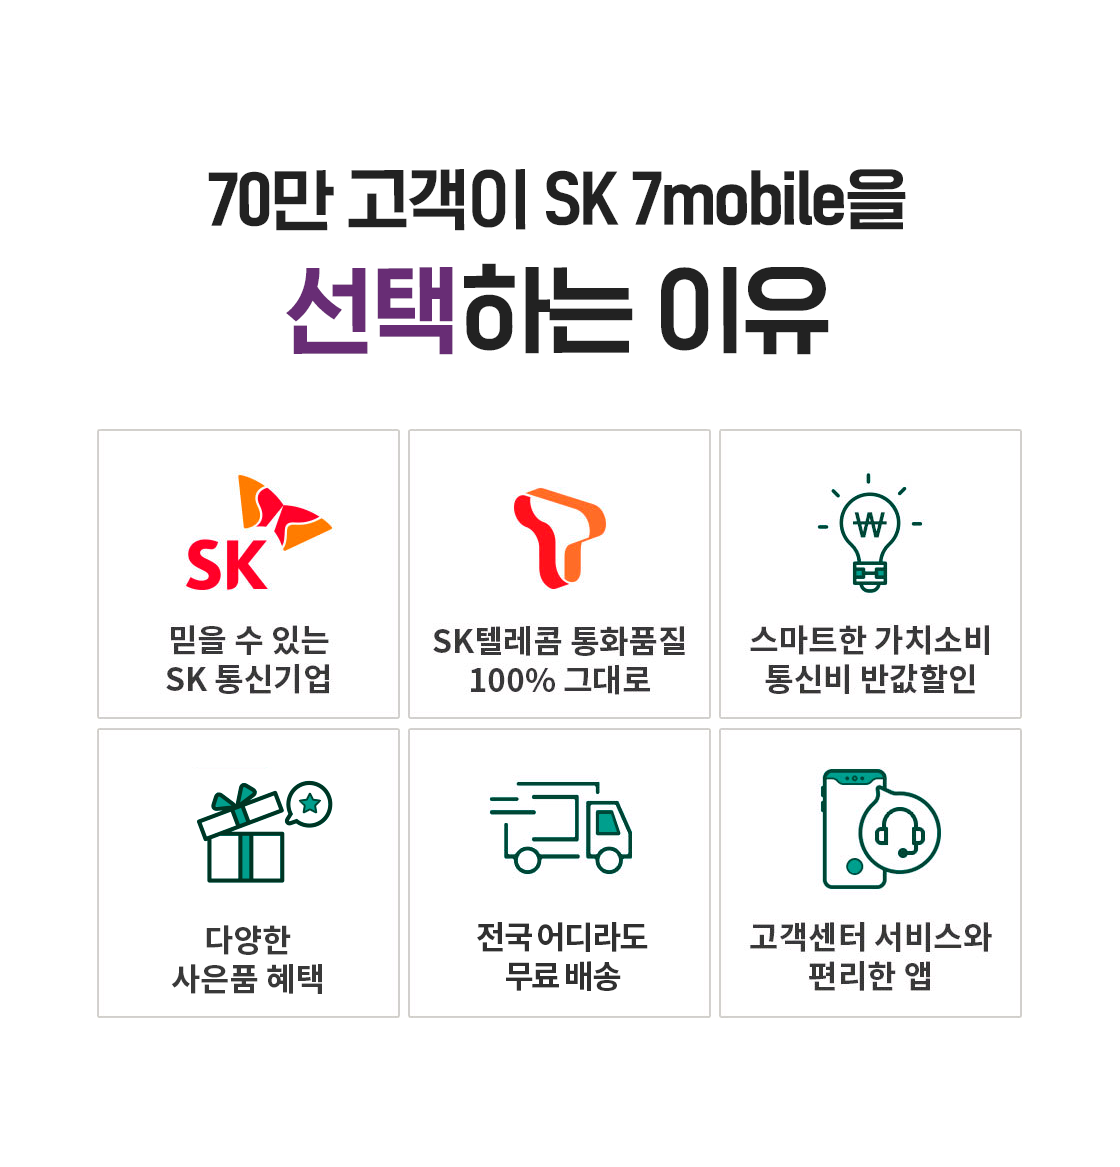 70만 고객이 SK7 mobile을 선택하는 이유